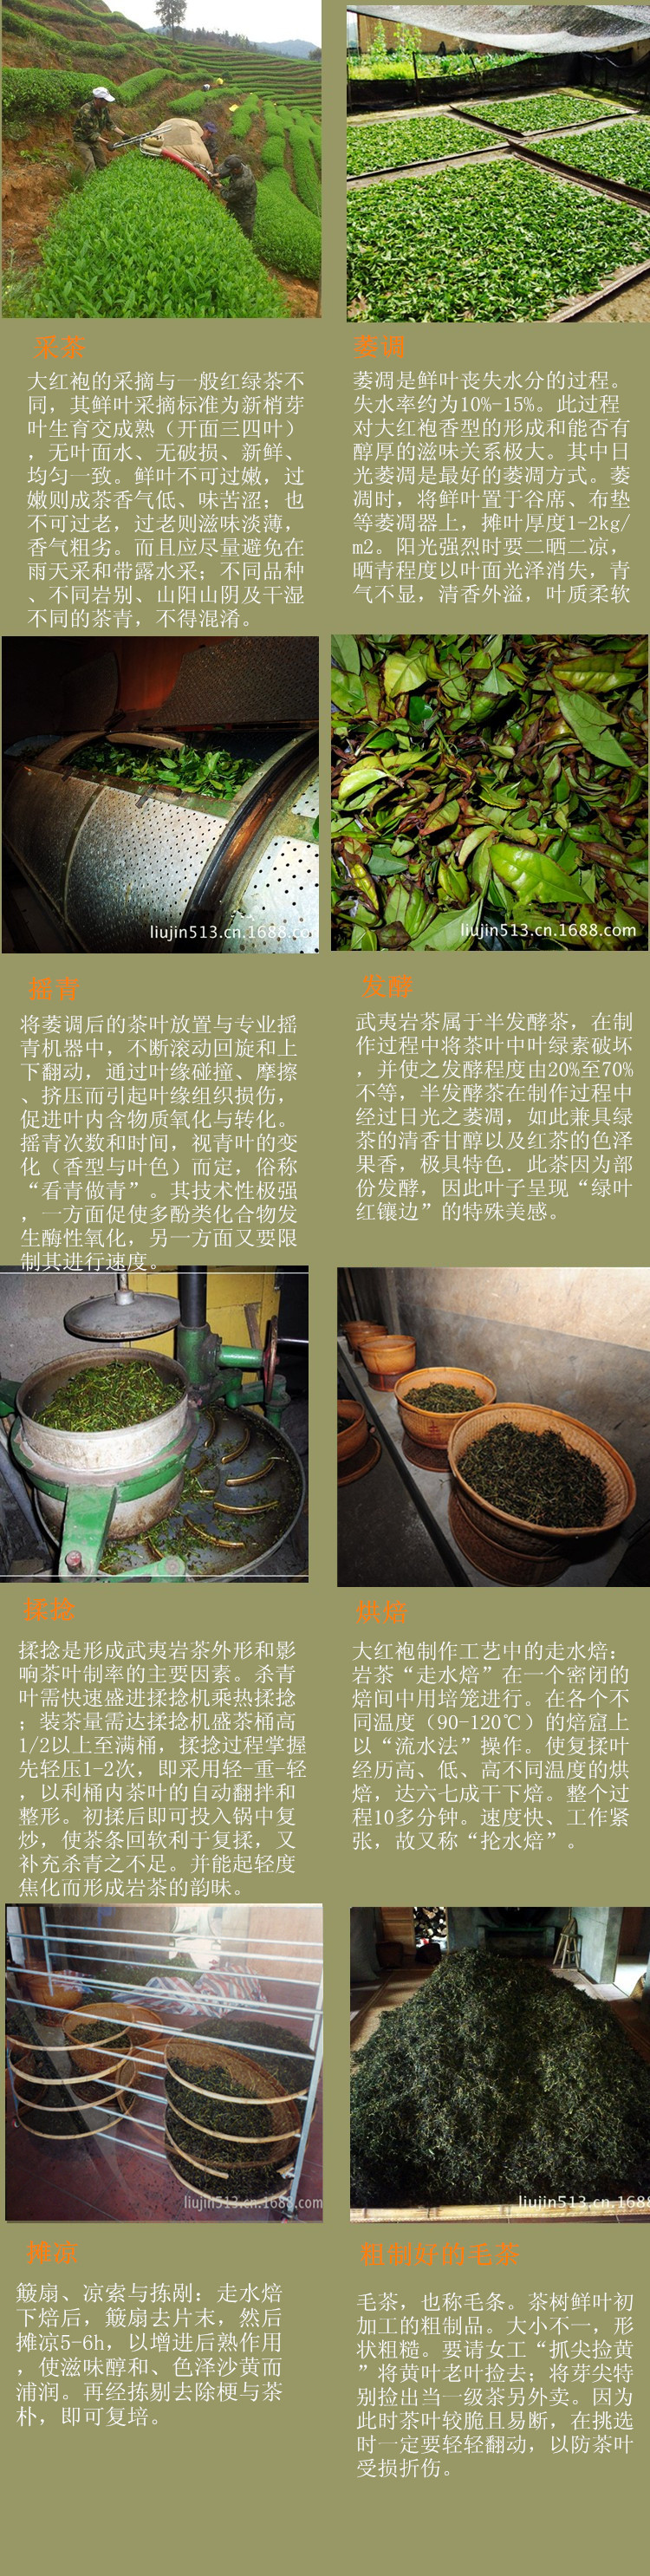 岩茶的制作工艺流程图图片